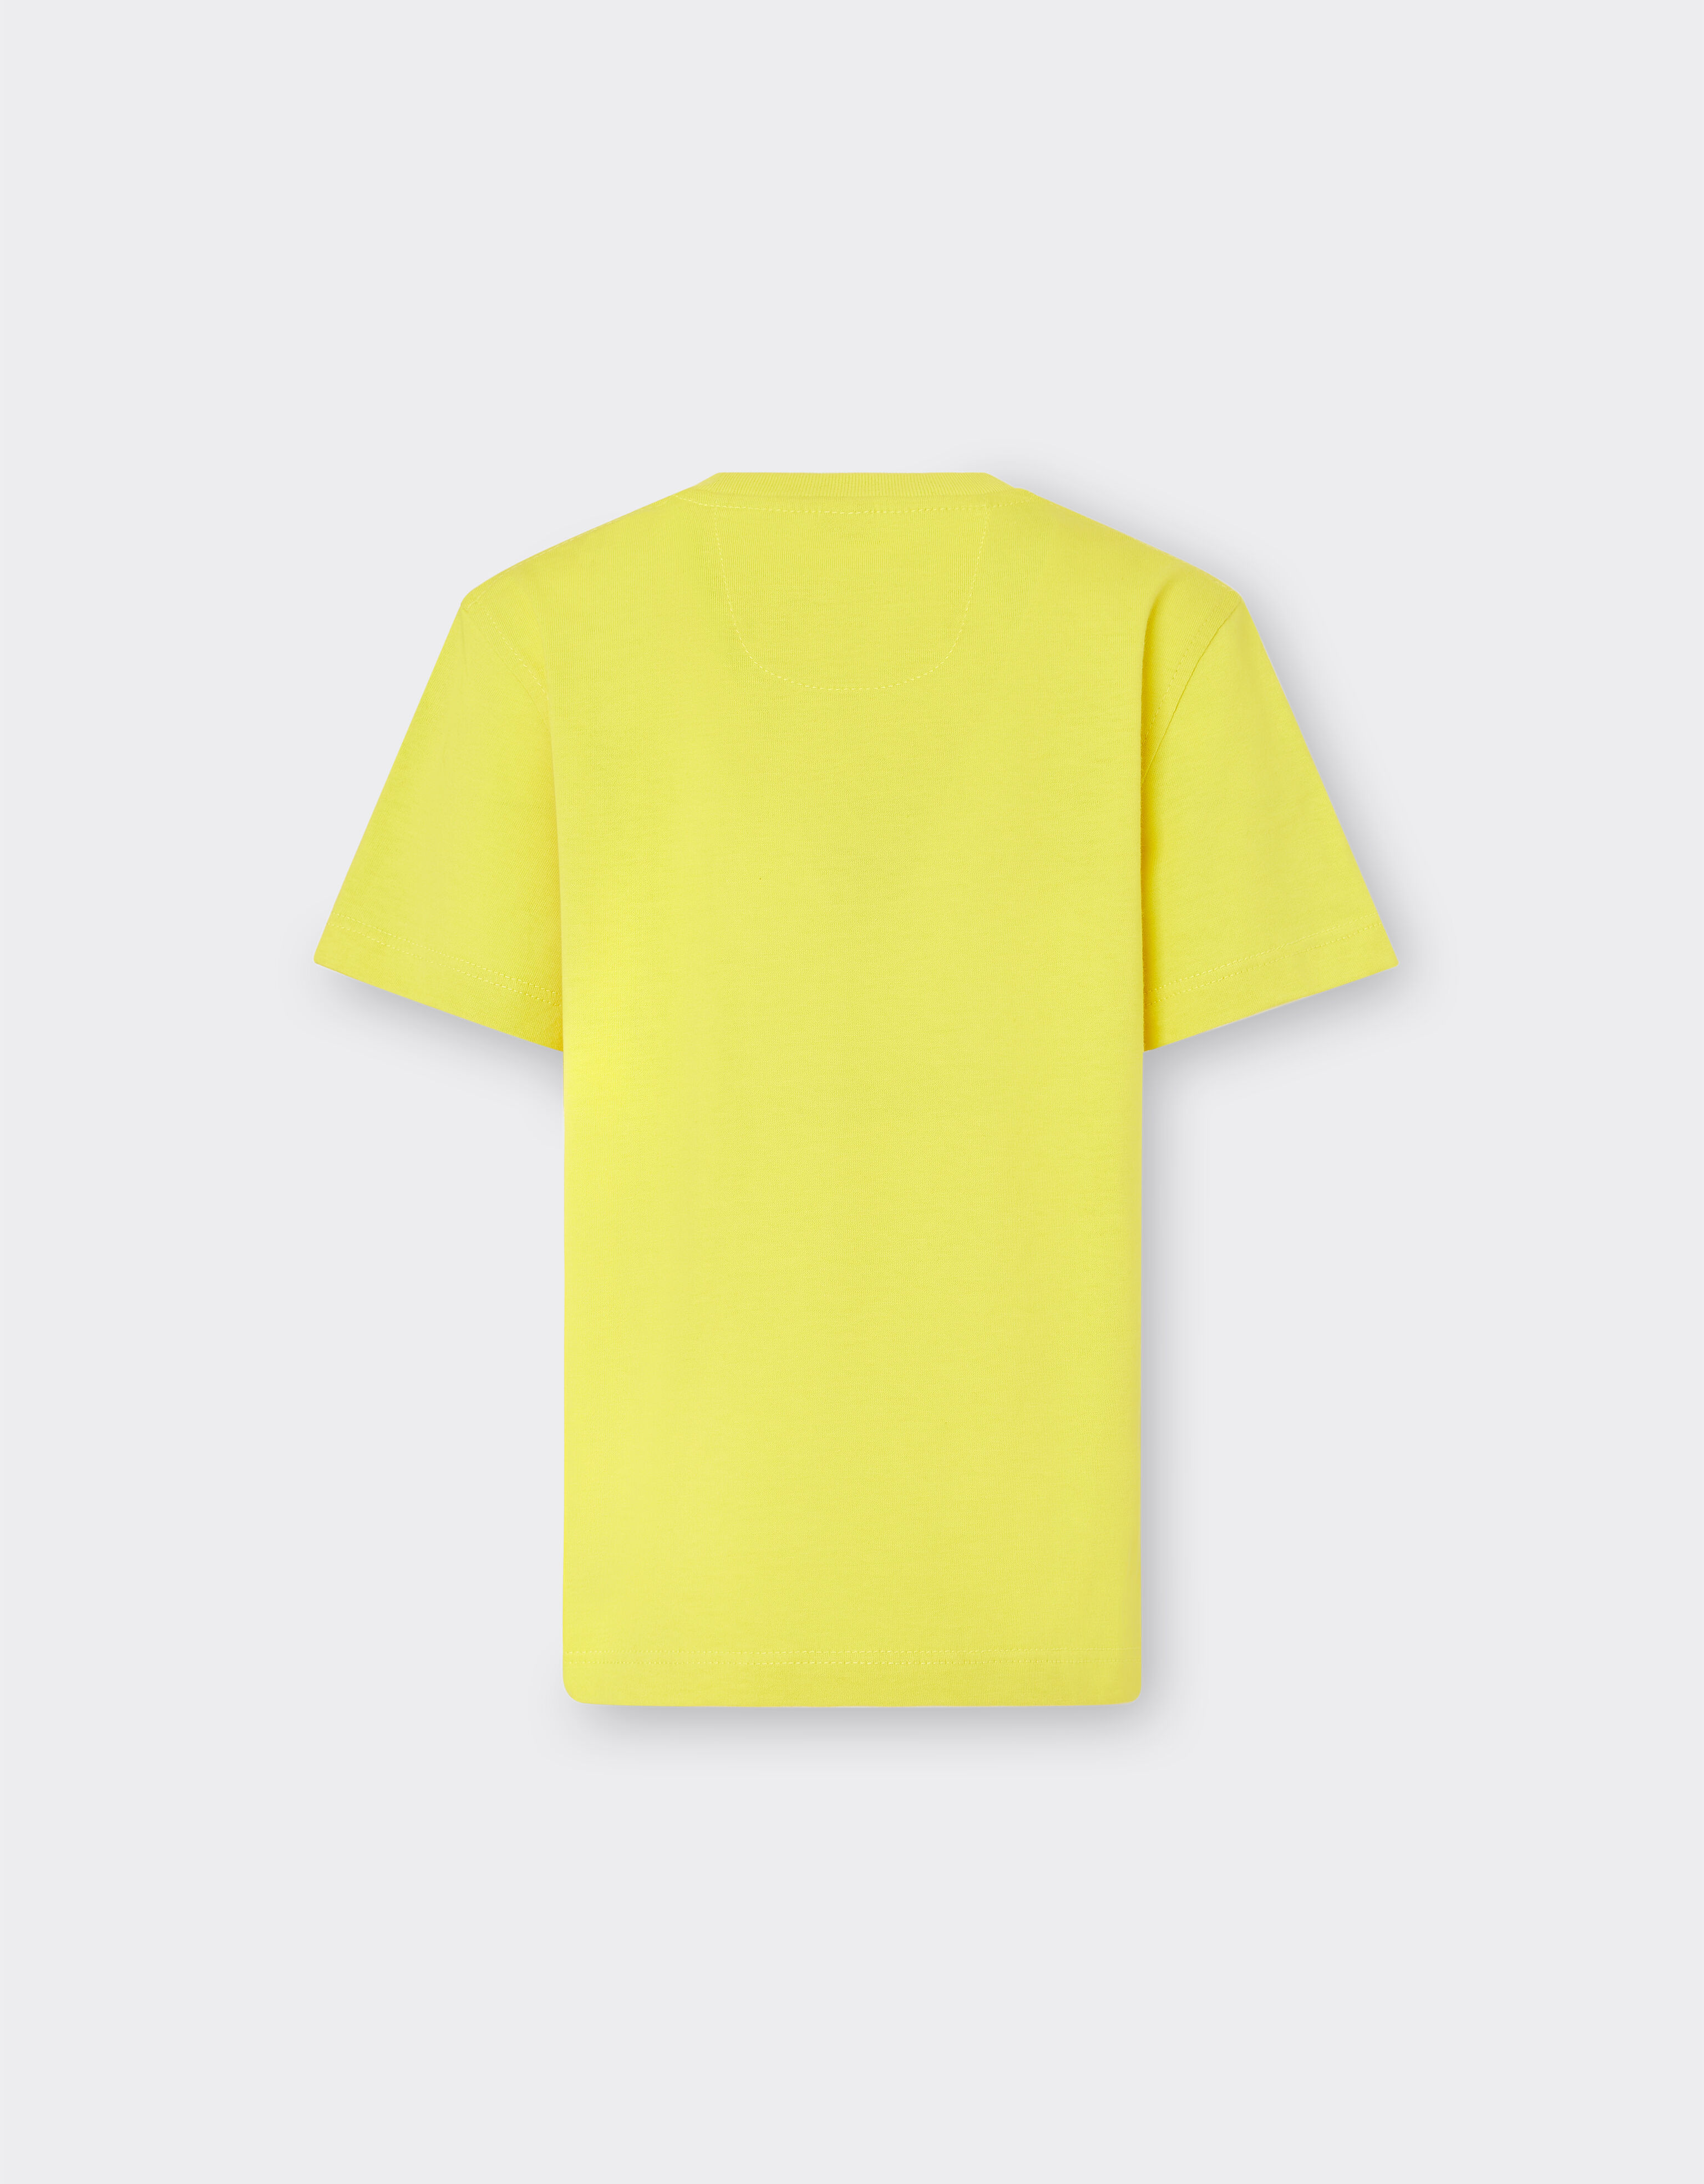 Ferrari T-shirt en coton avec logo Ferrari Giallo Modena 20162fK